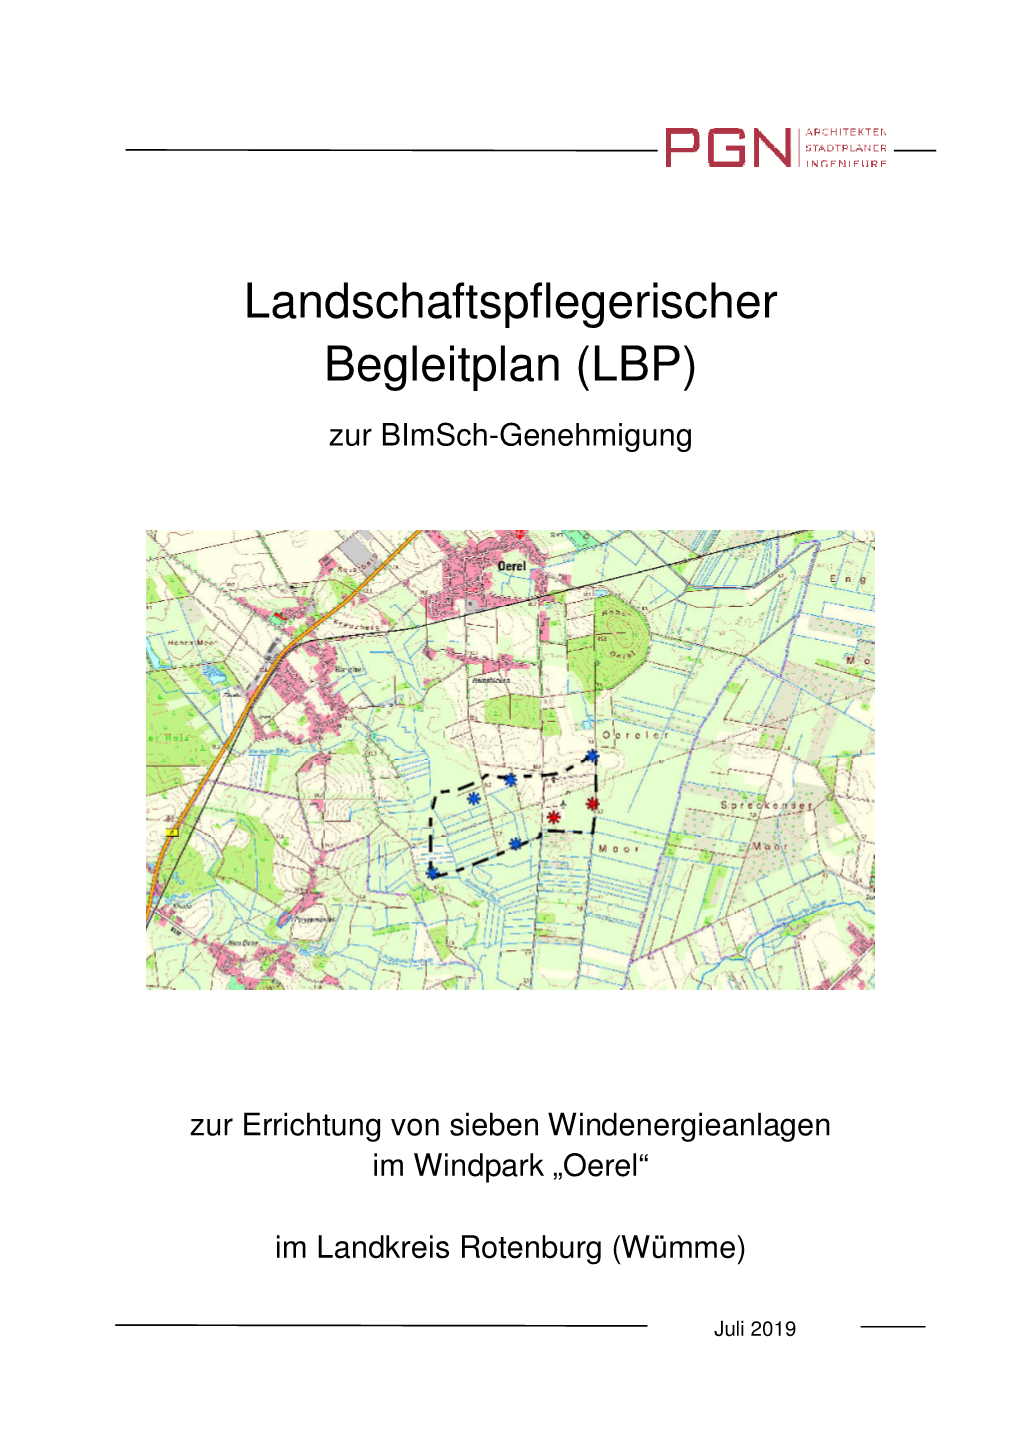 Landschaftspflegerischer Begleitplan (LBP) Zur Bimsch-Genehmigung